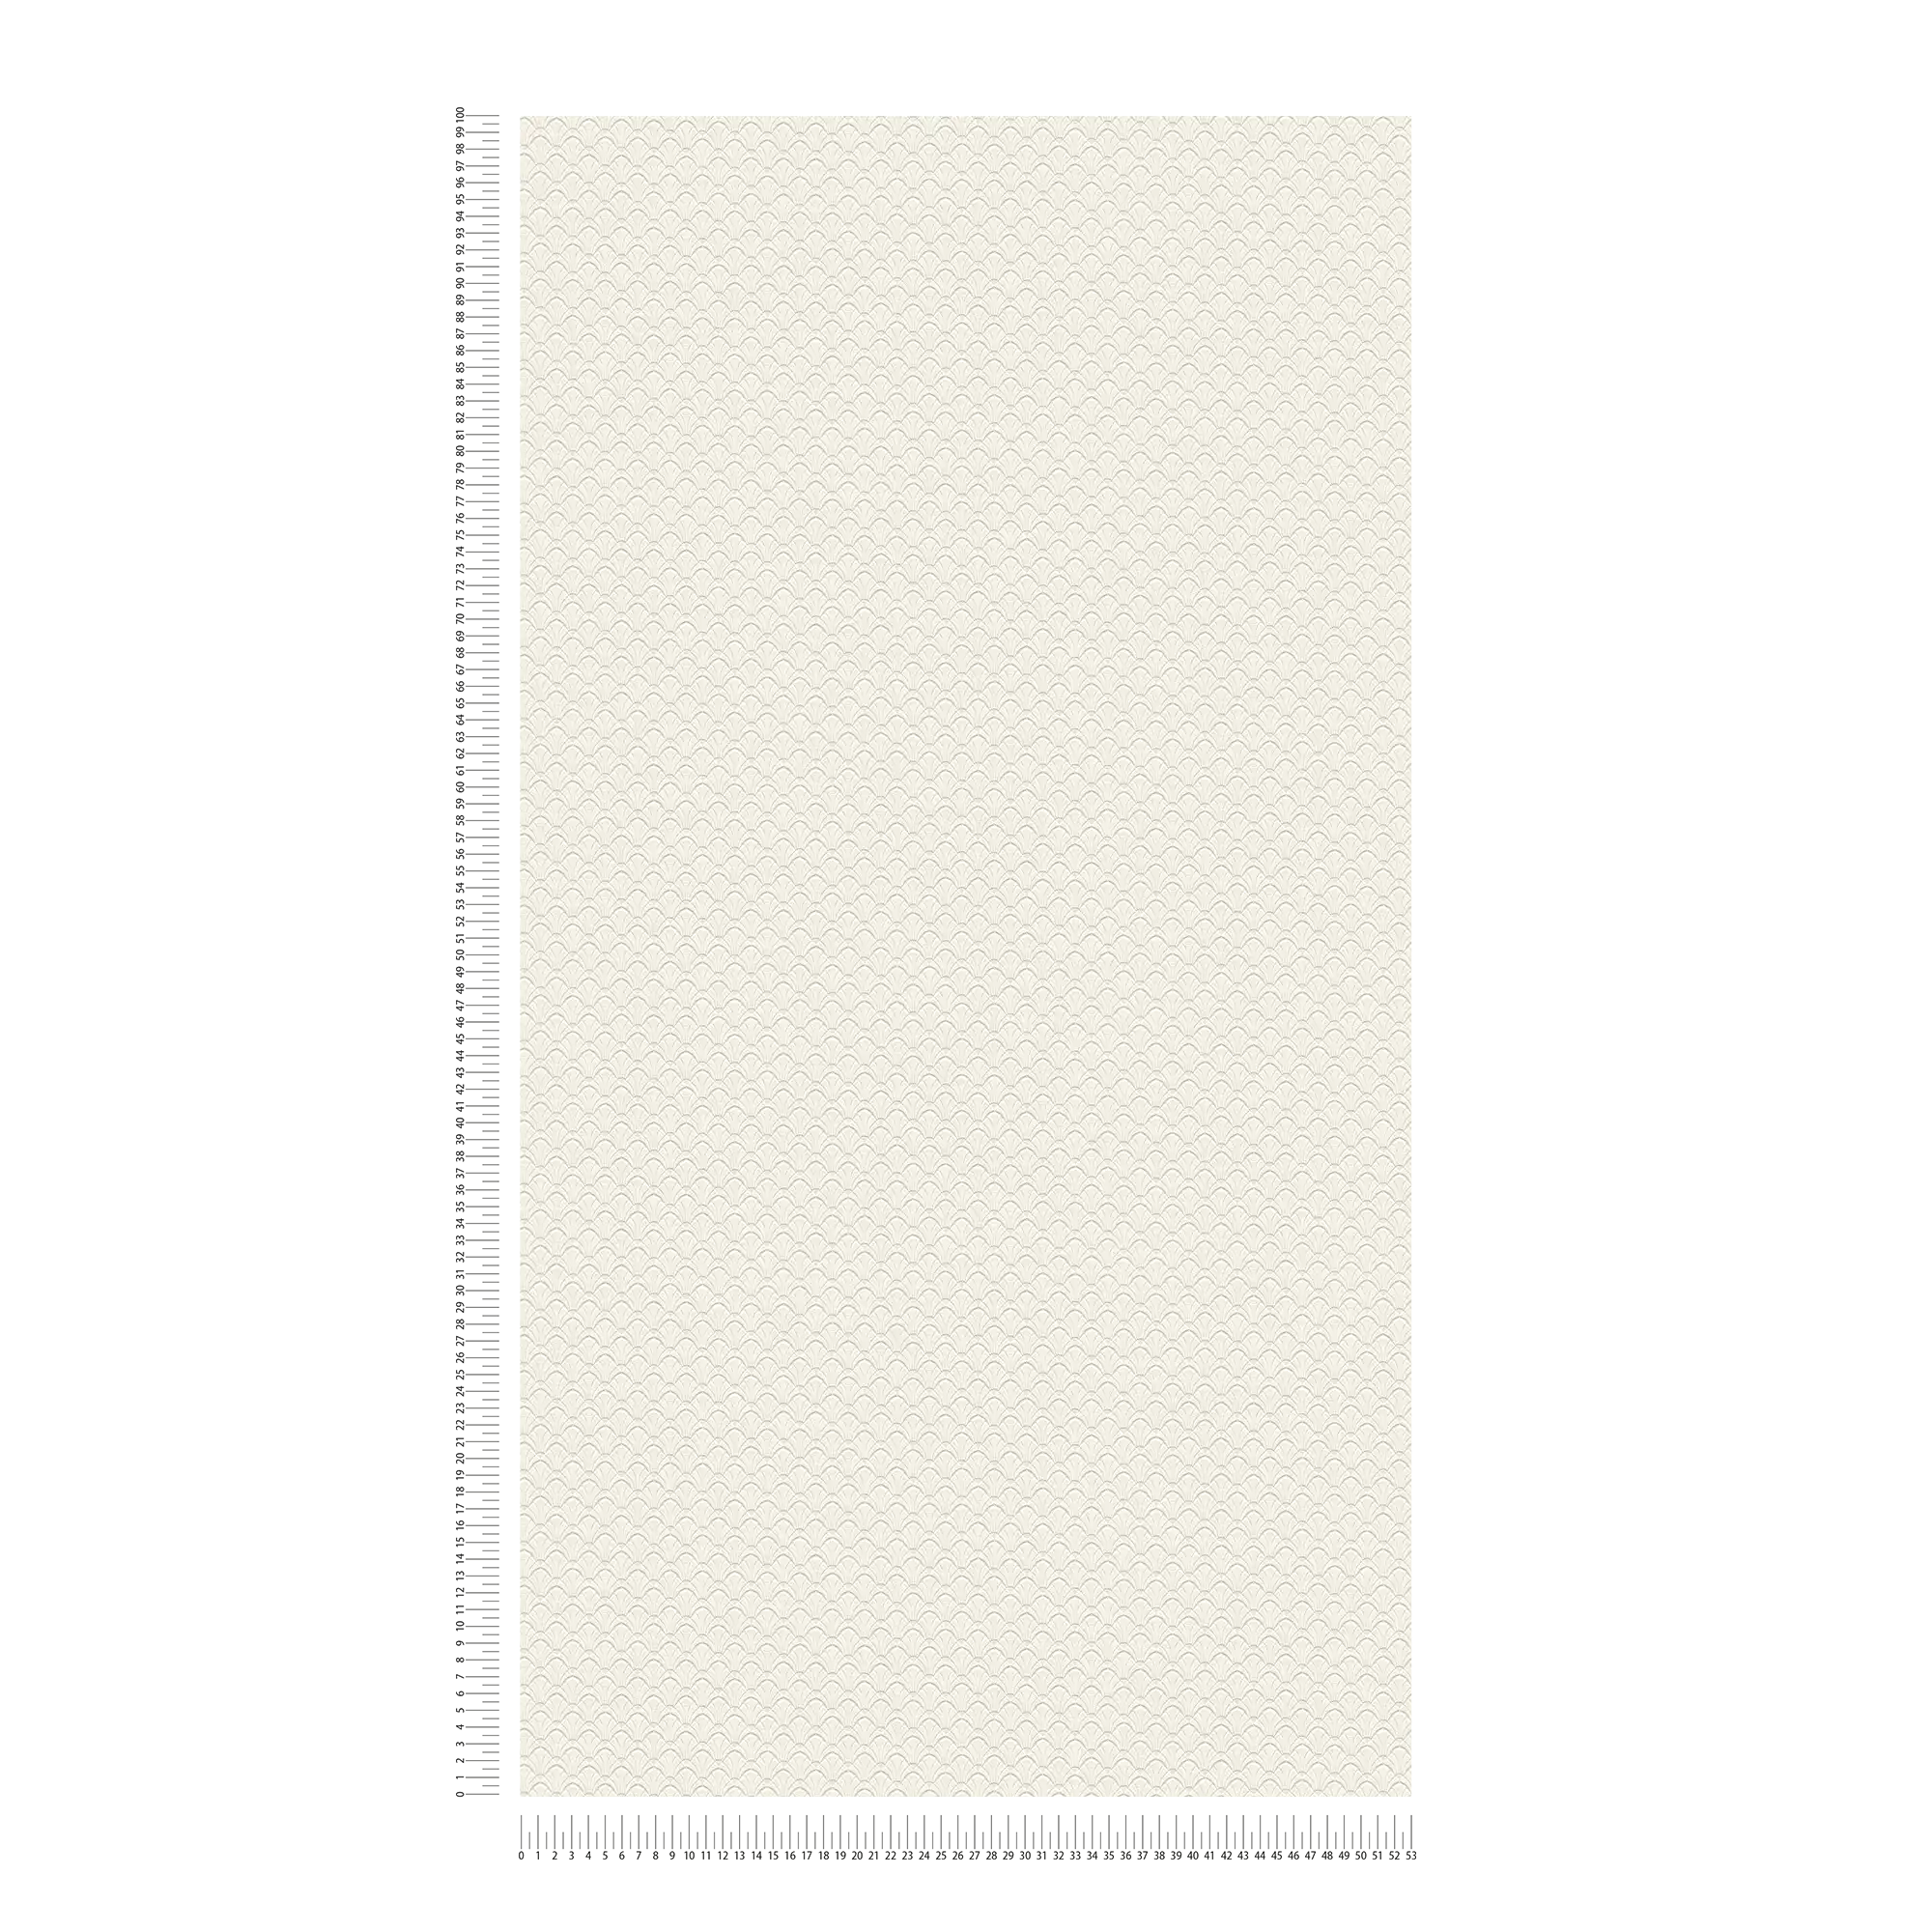             Papier peint motifs structurés en filigrane sur le thème des coquillages - crème, blanc
        